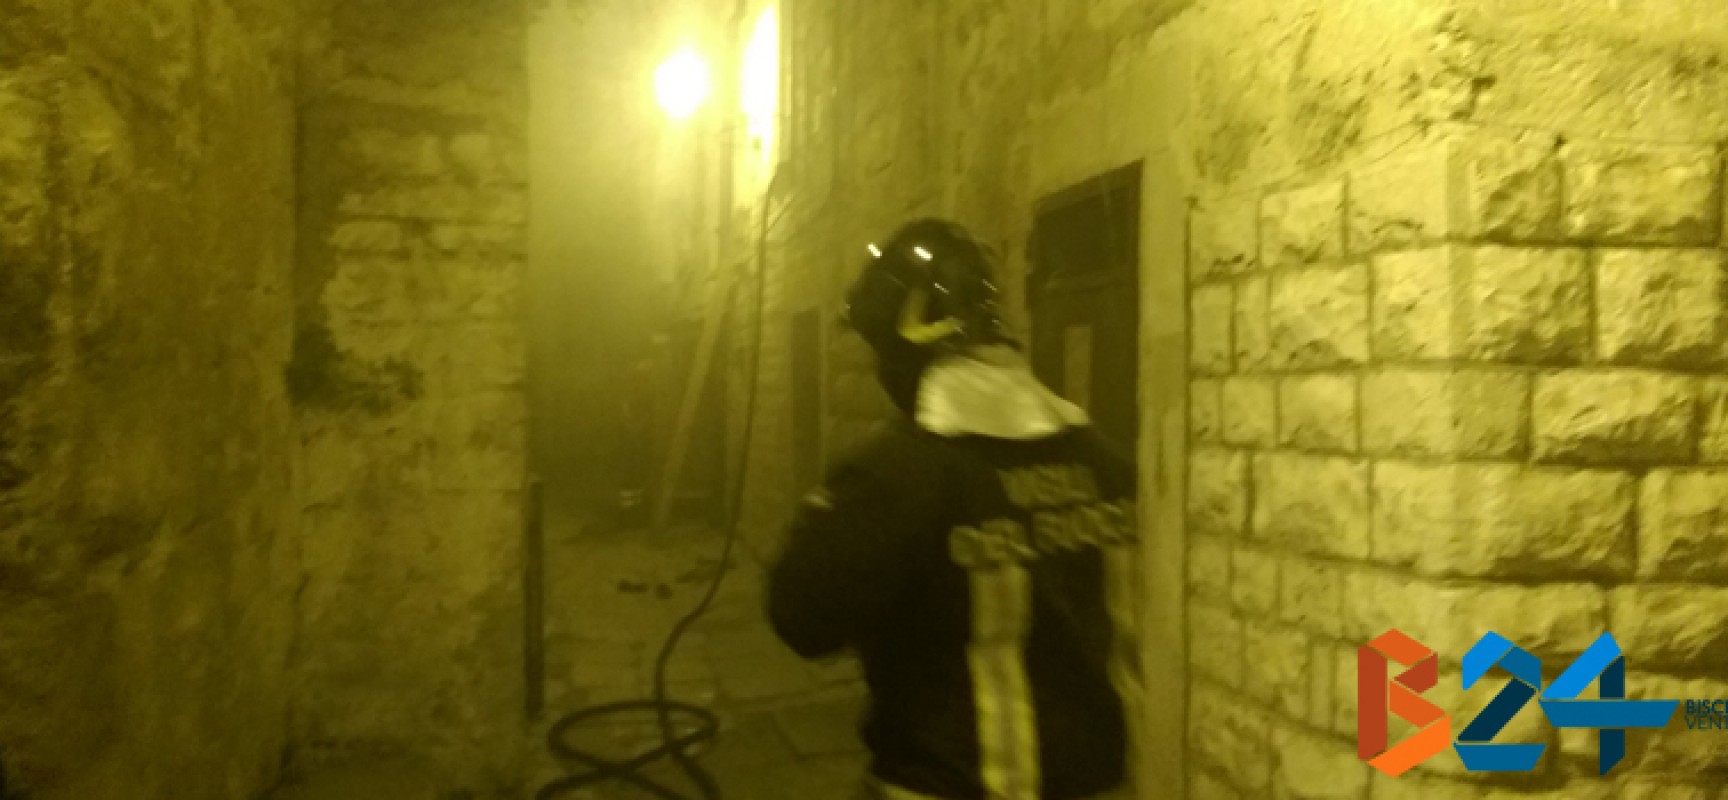 Ieri sera incendio in un appartamento del centro storico / FOTO